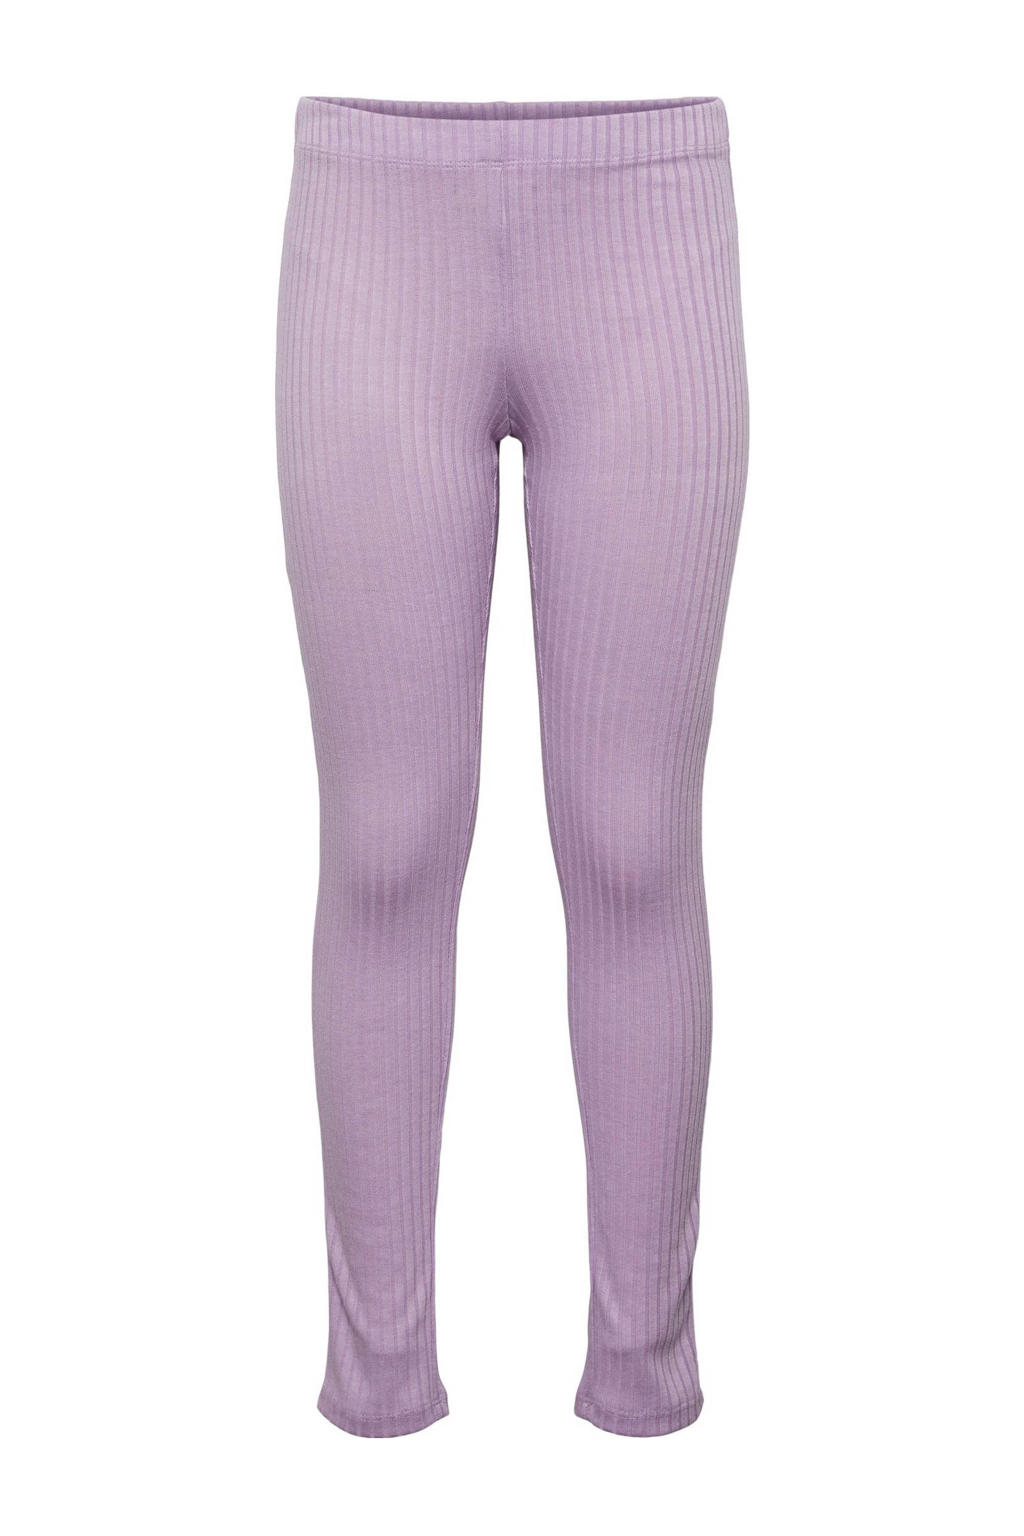 Lilakleurige meisjes PIECES KIDS legging van polyester met skinny fit, regular waist en elastische tailleband